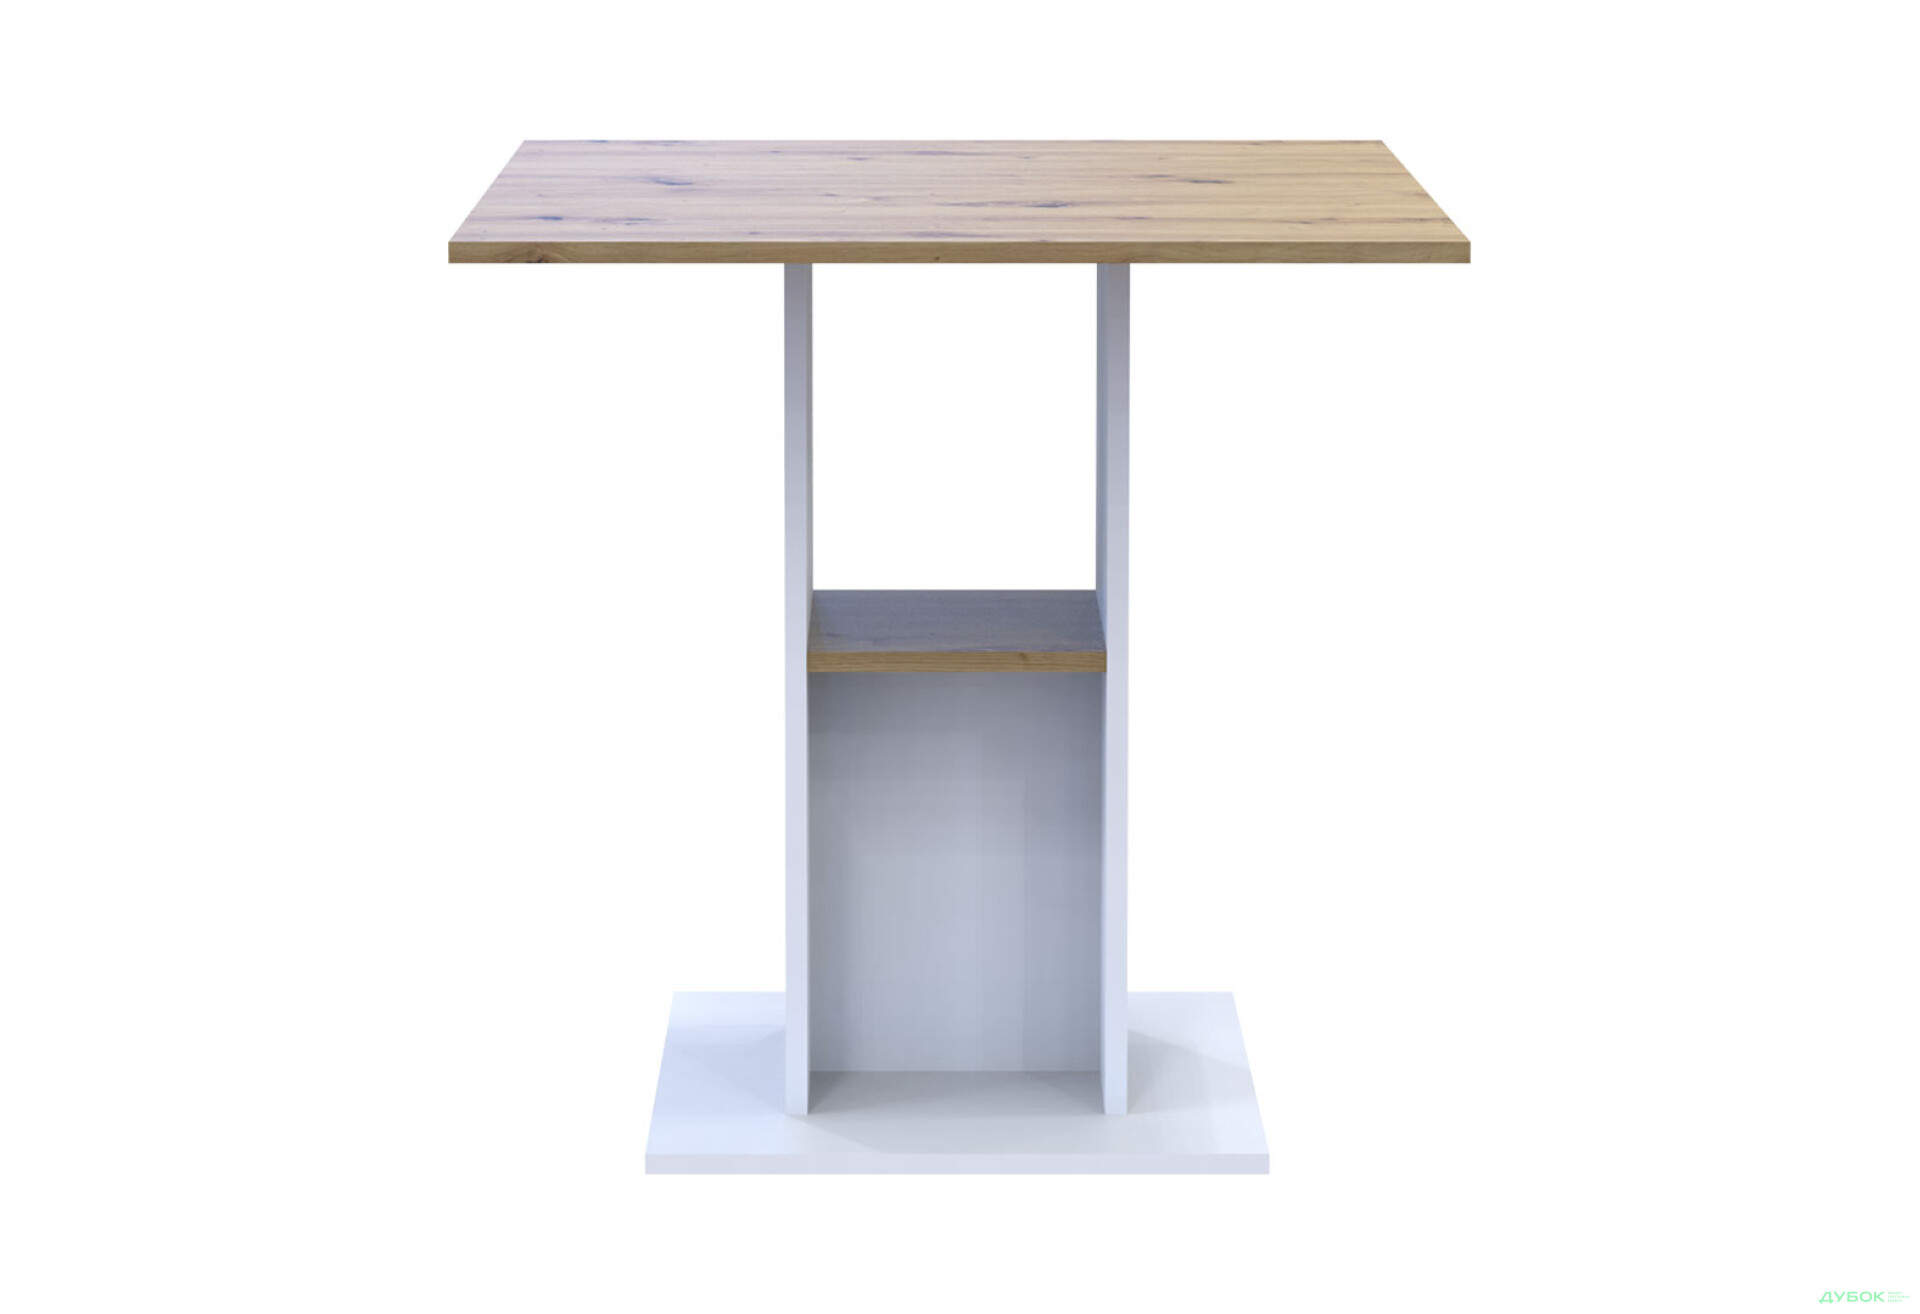 Фото 3 - Столовый стол Doros Коуд 70 см белый / дуб артизан